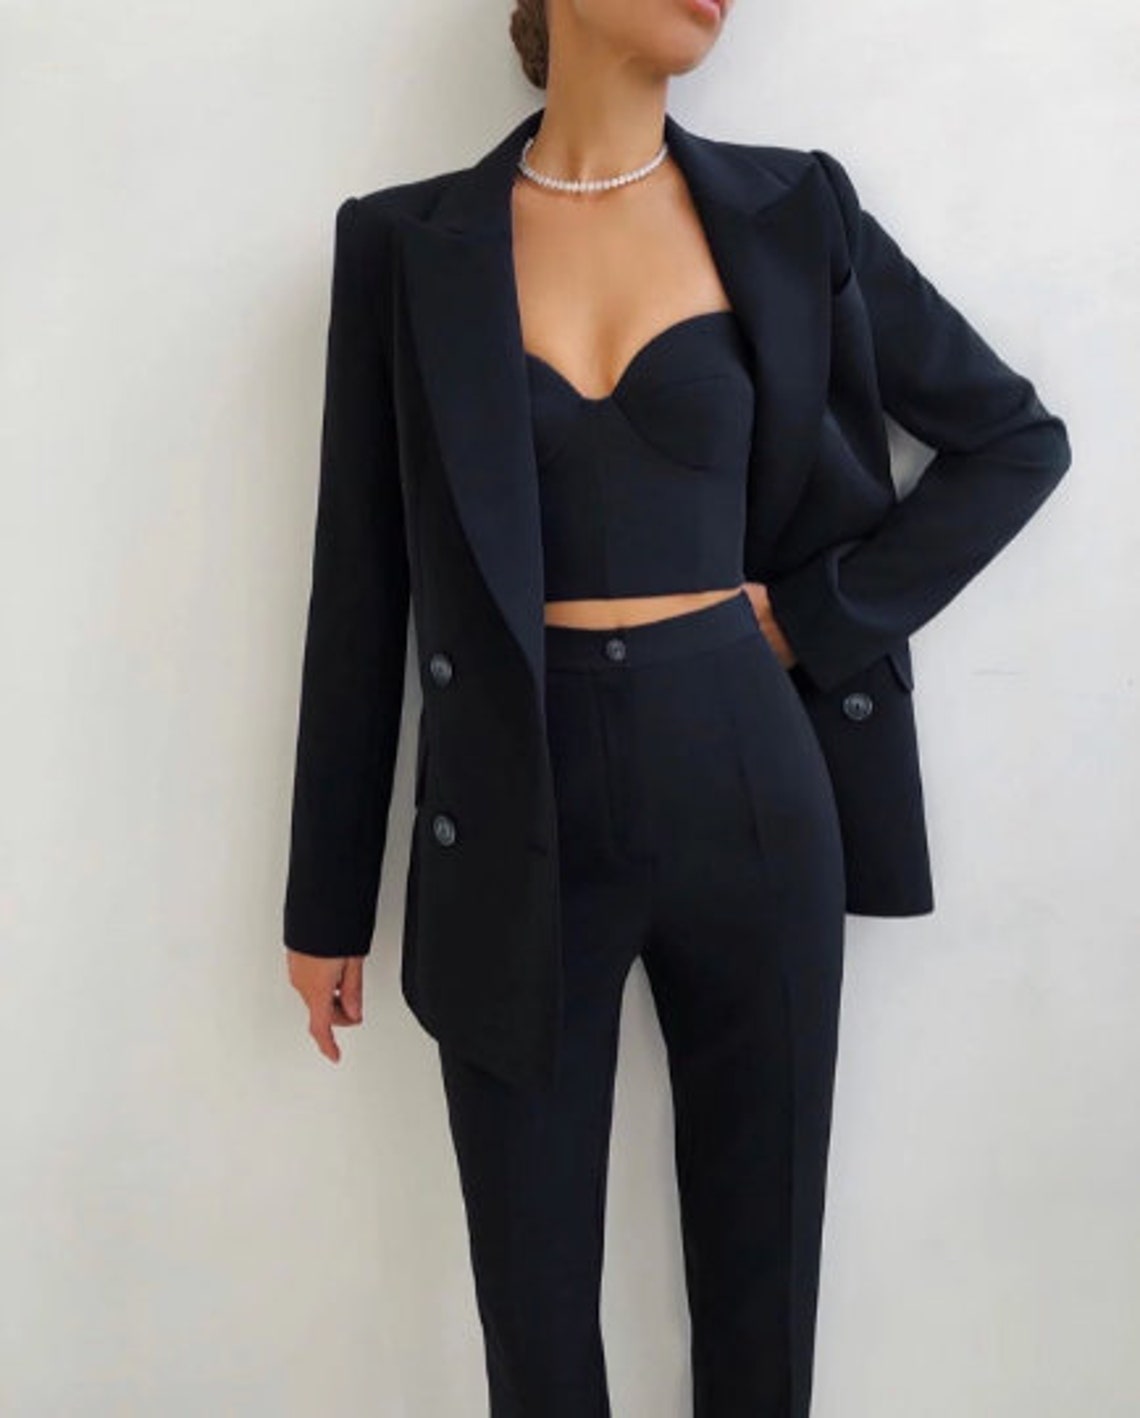 Office Women 3 Piece Suit Womens Blazer Suit Classic Suit - Etsy